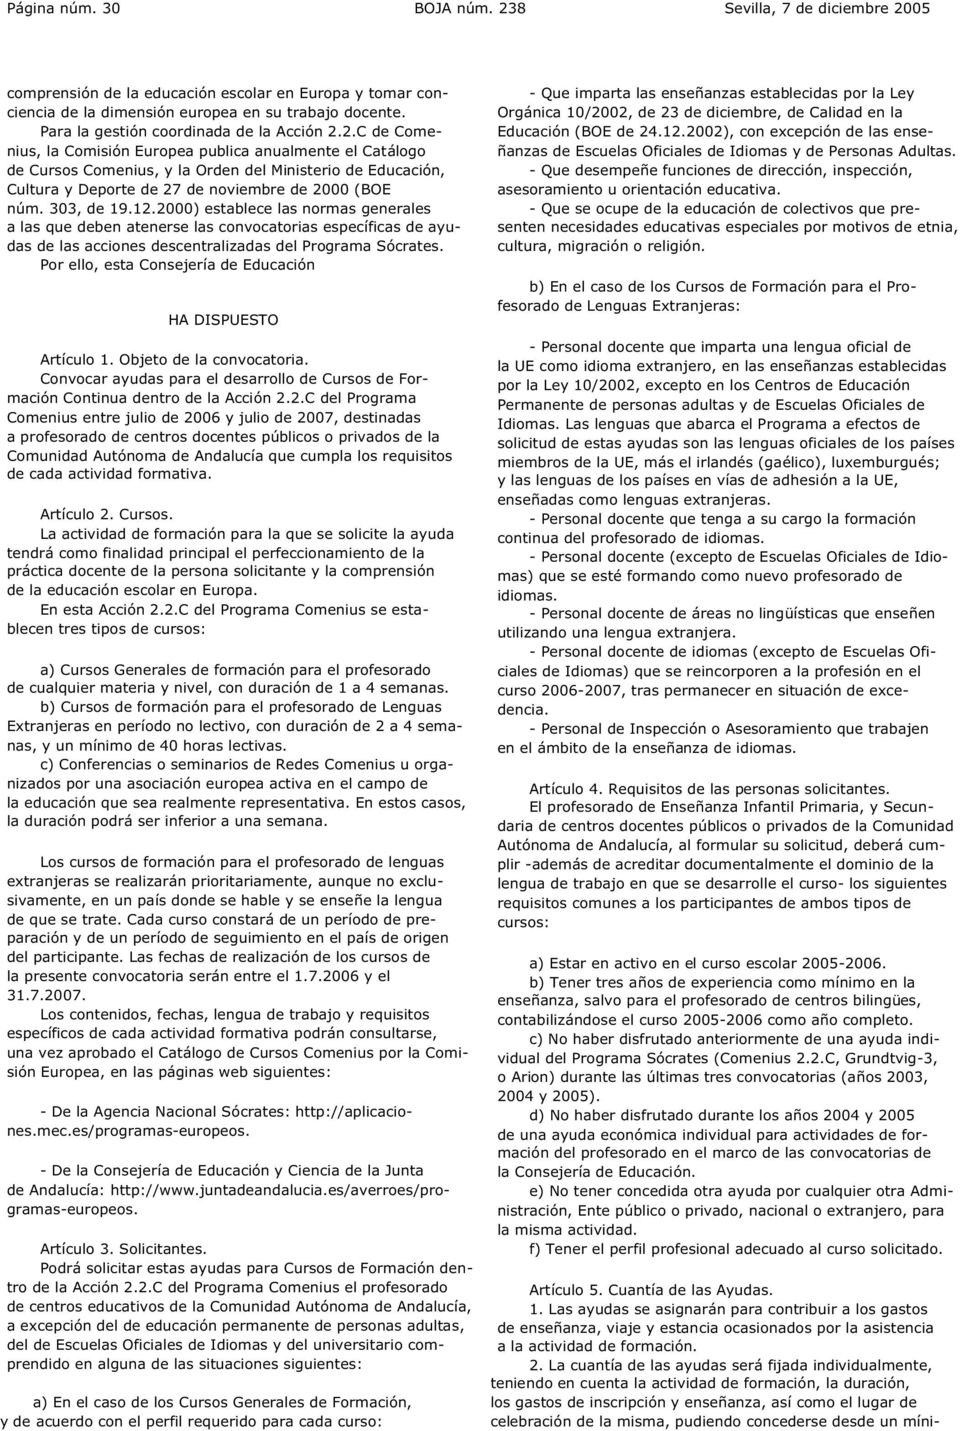 2.C de Comenius, la Comisión Europea publica anualmente el Catálogo de Cursos Comenius, y la Orden del Ministerio de Educación, Cultura y Deporte de 27 de noviembre de 2000 (BOE núm. 303, de 19.12.